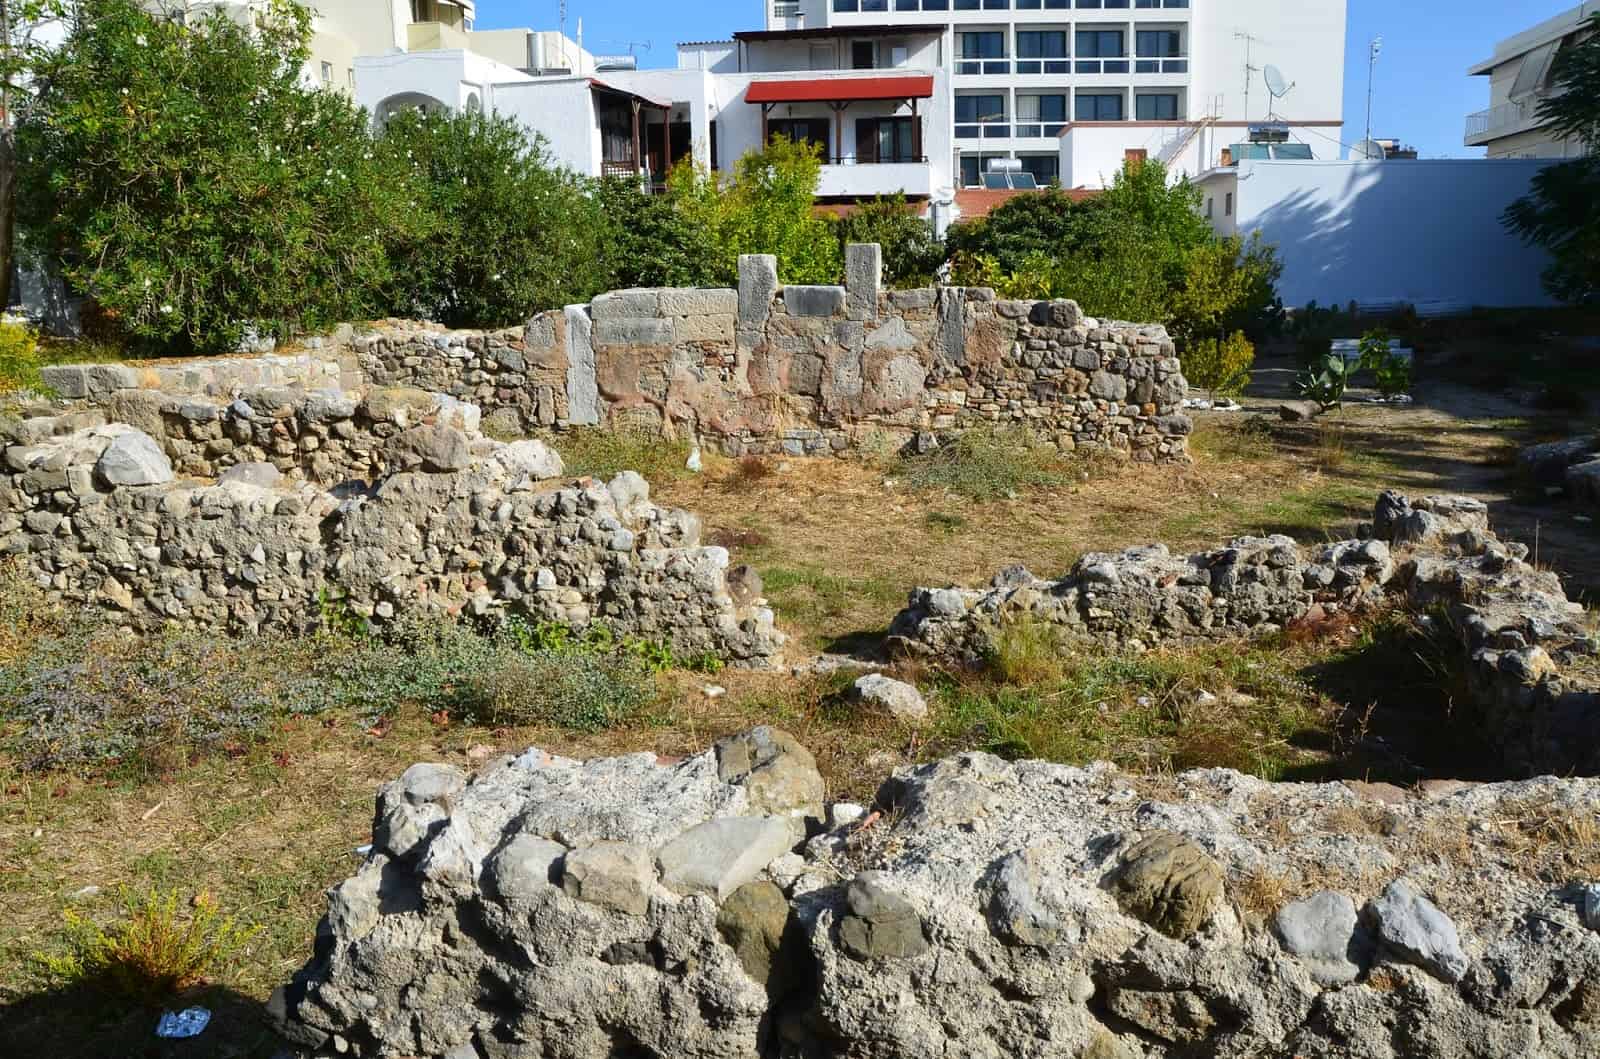 Roman baths in Kos, Greece